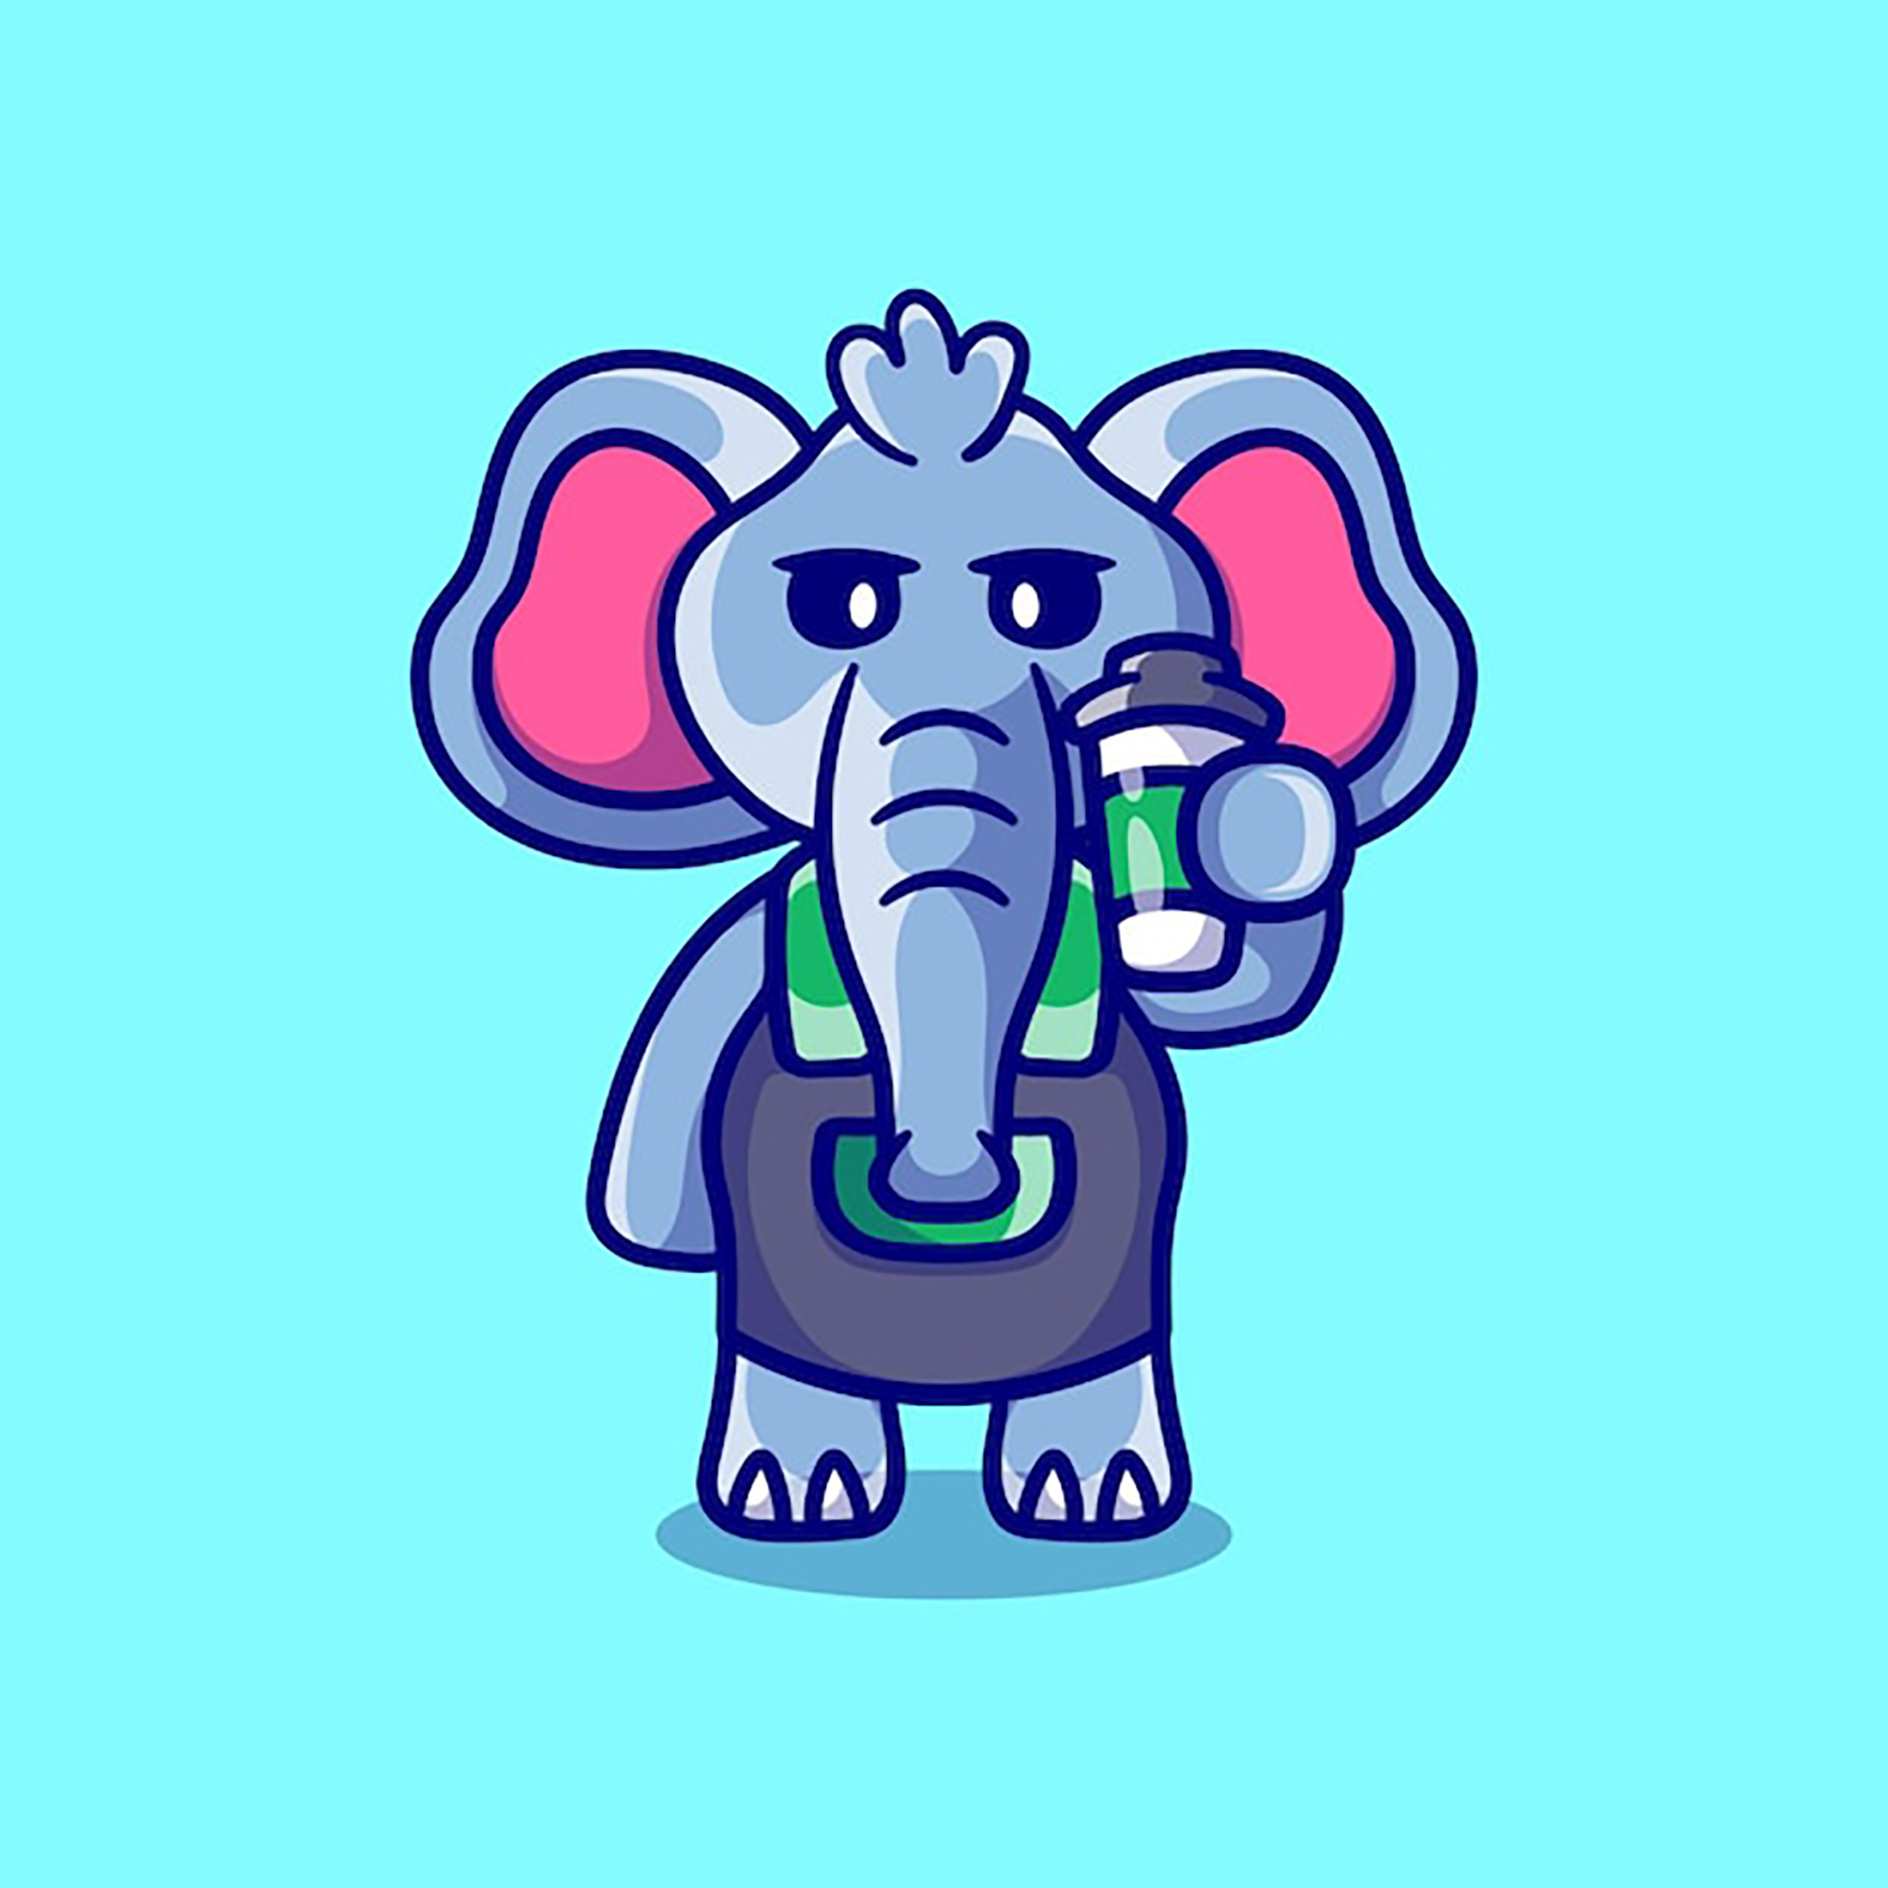 وکتور کارتونی فیل با رنگ های شاد